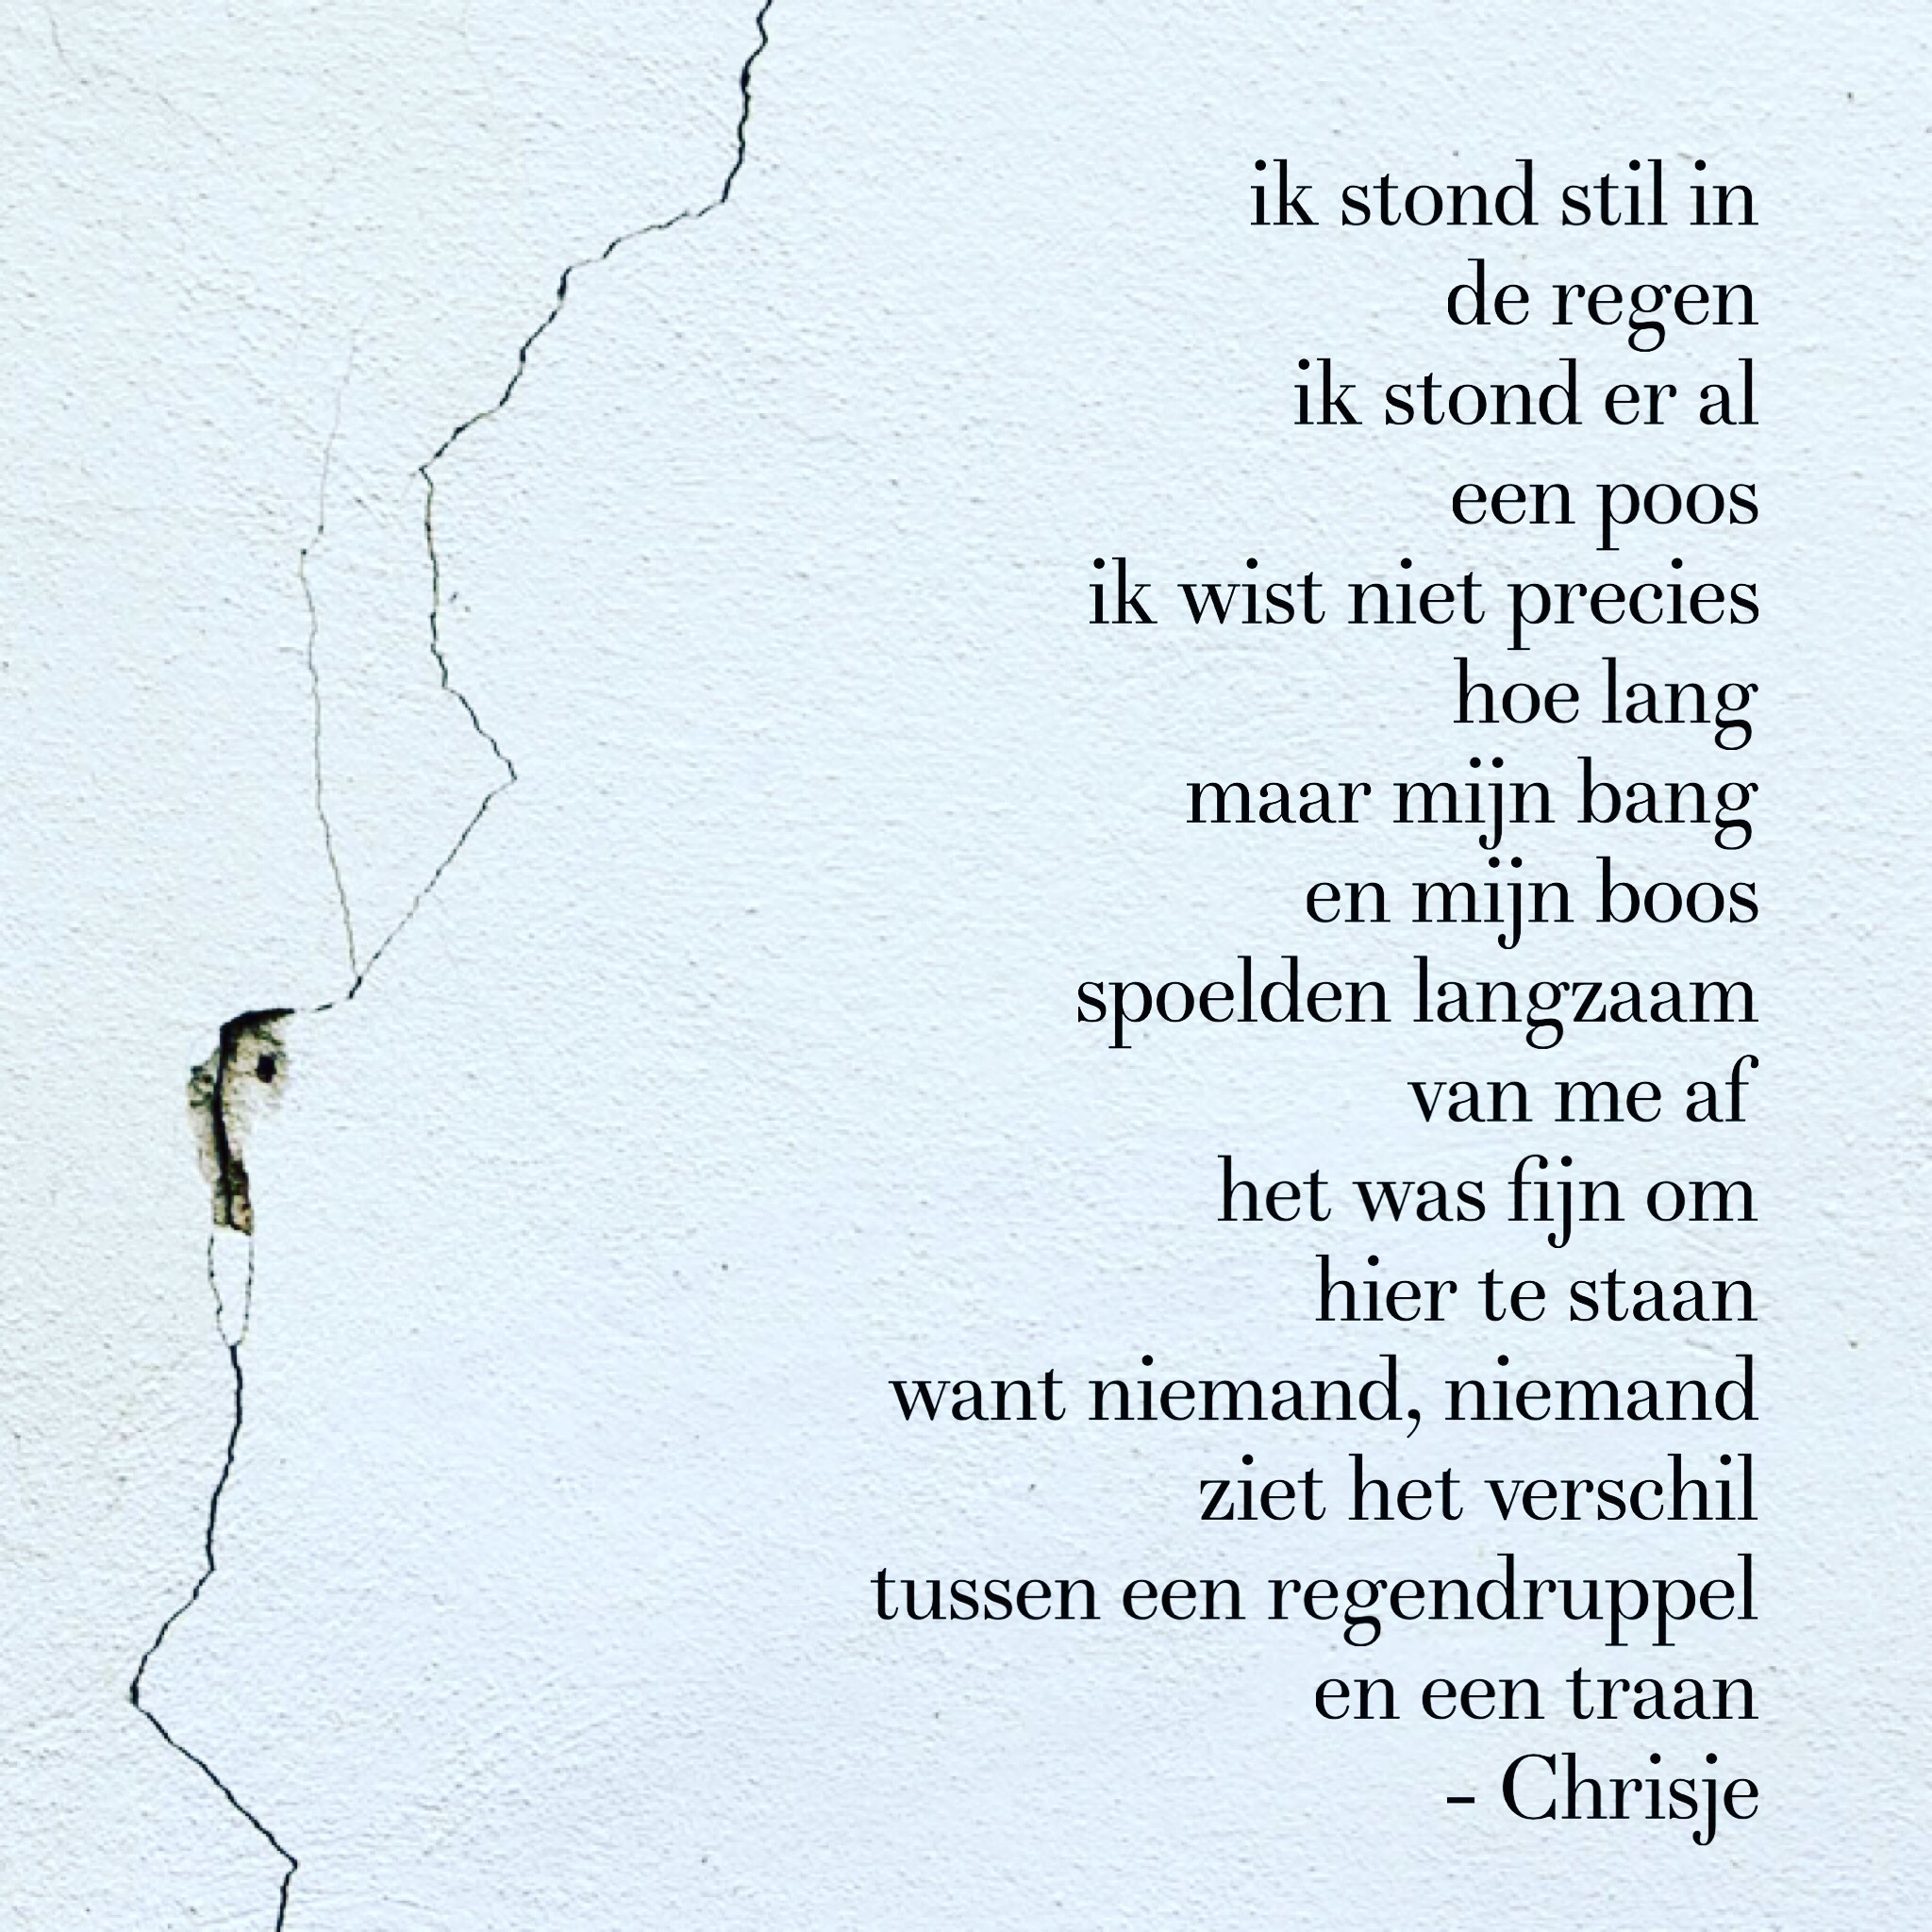 Uitgelezene Gedicht: “In de regen.” | Chrisje.info GO-22